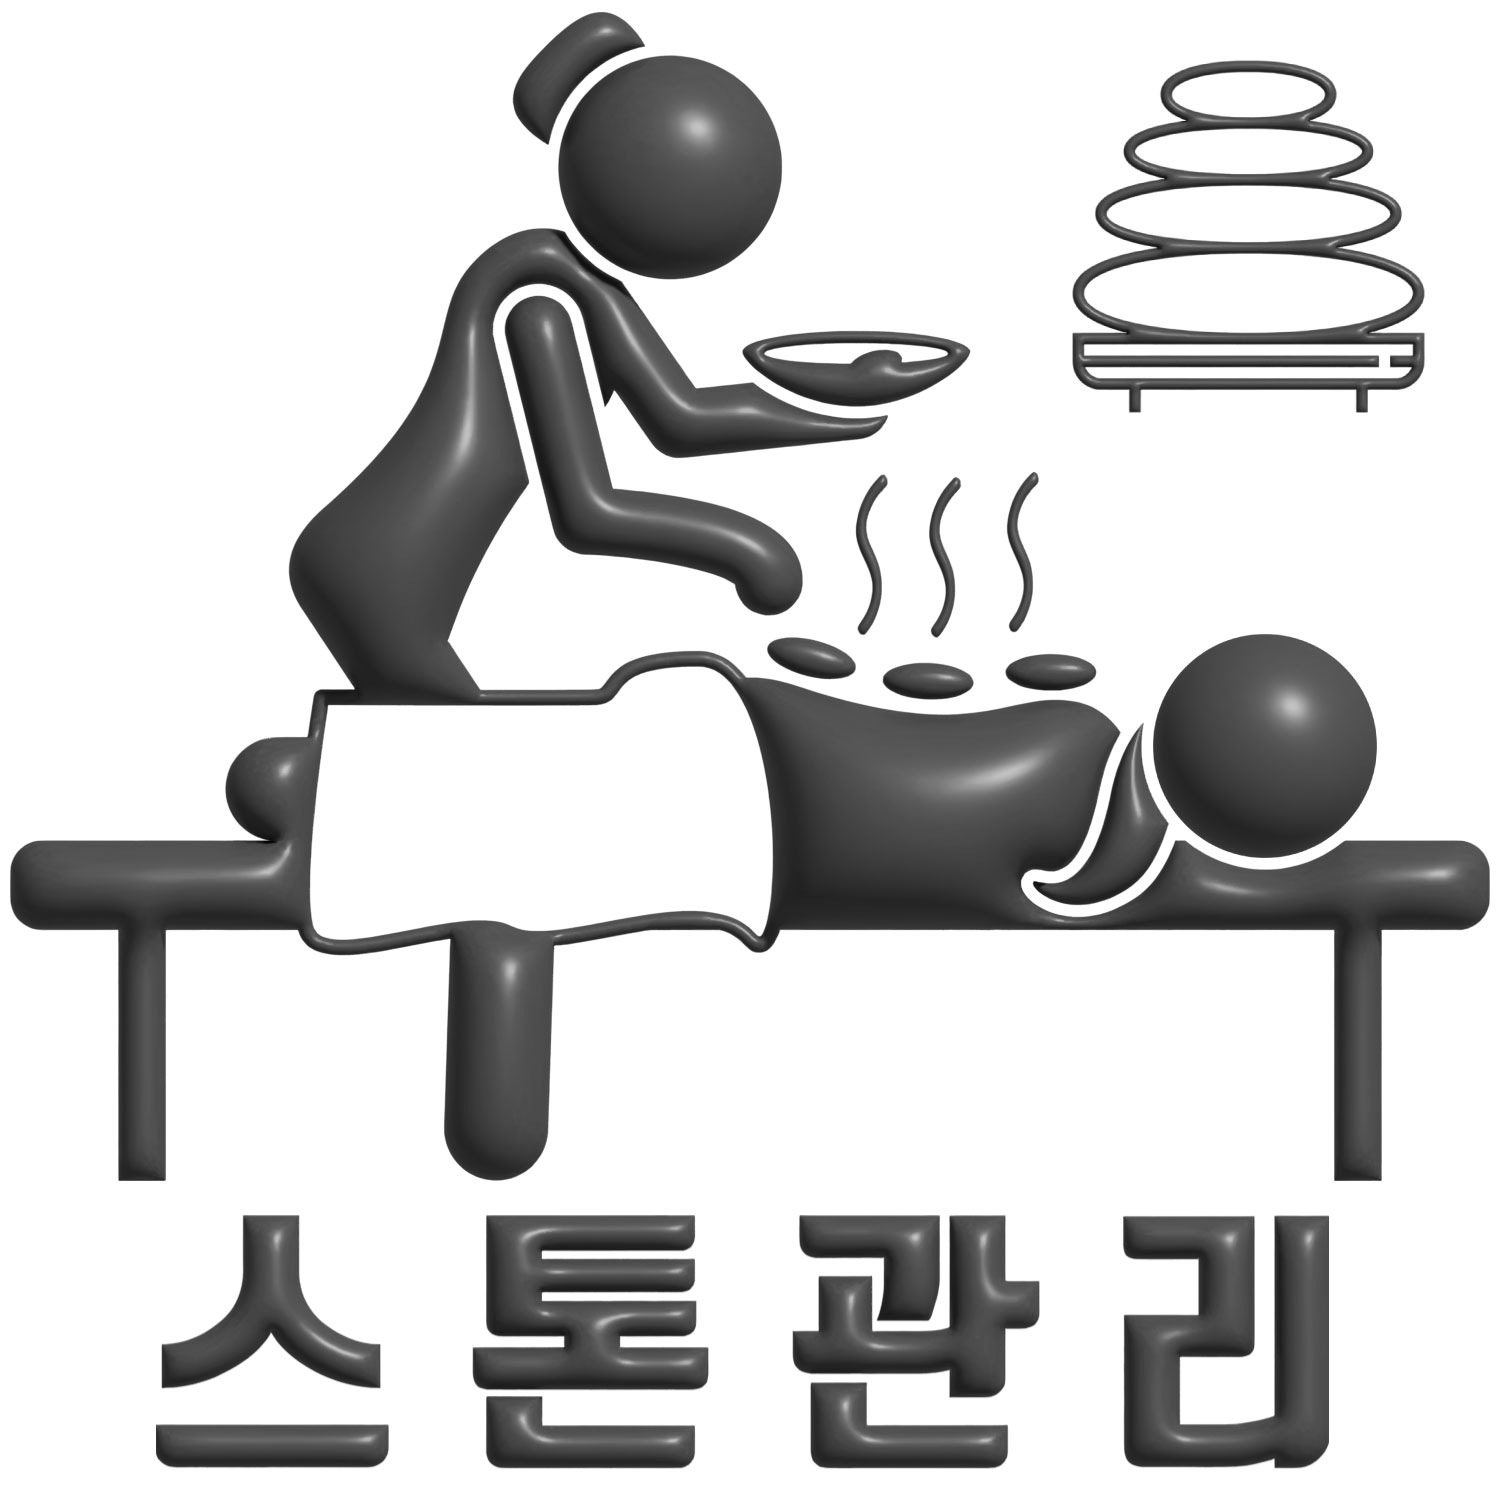 경기도 광주시 양벌동 마리나테라피 스톤 관리